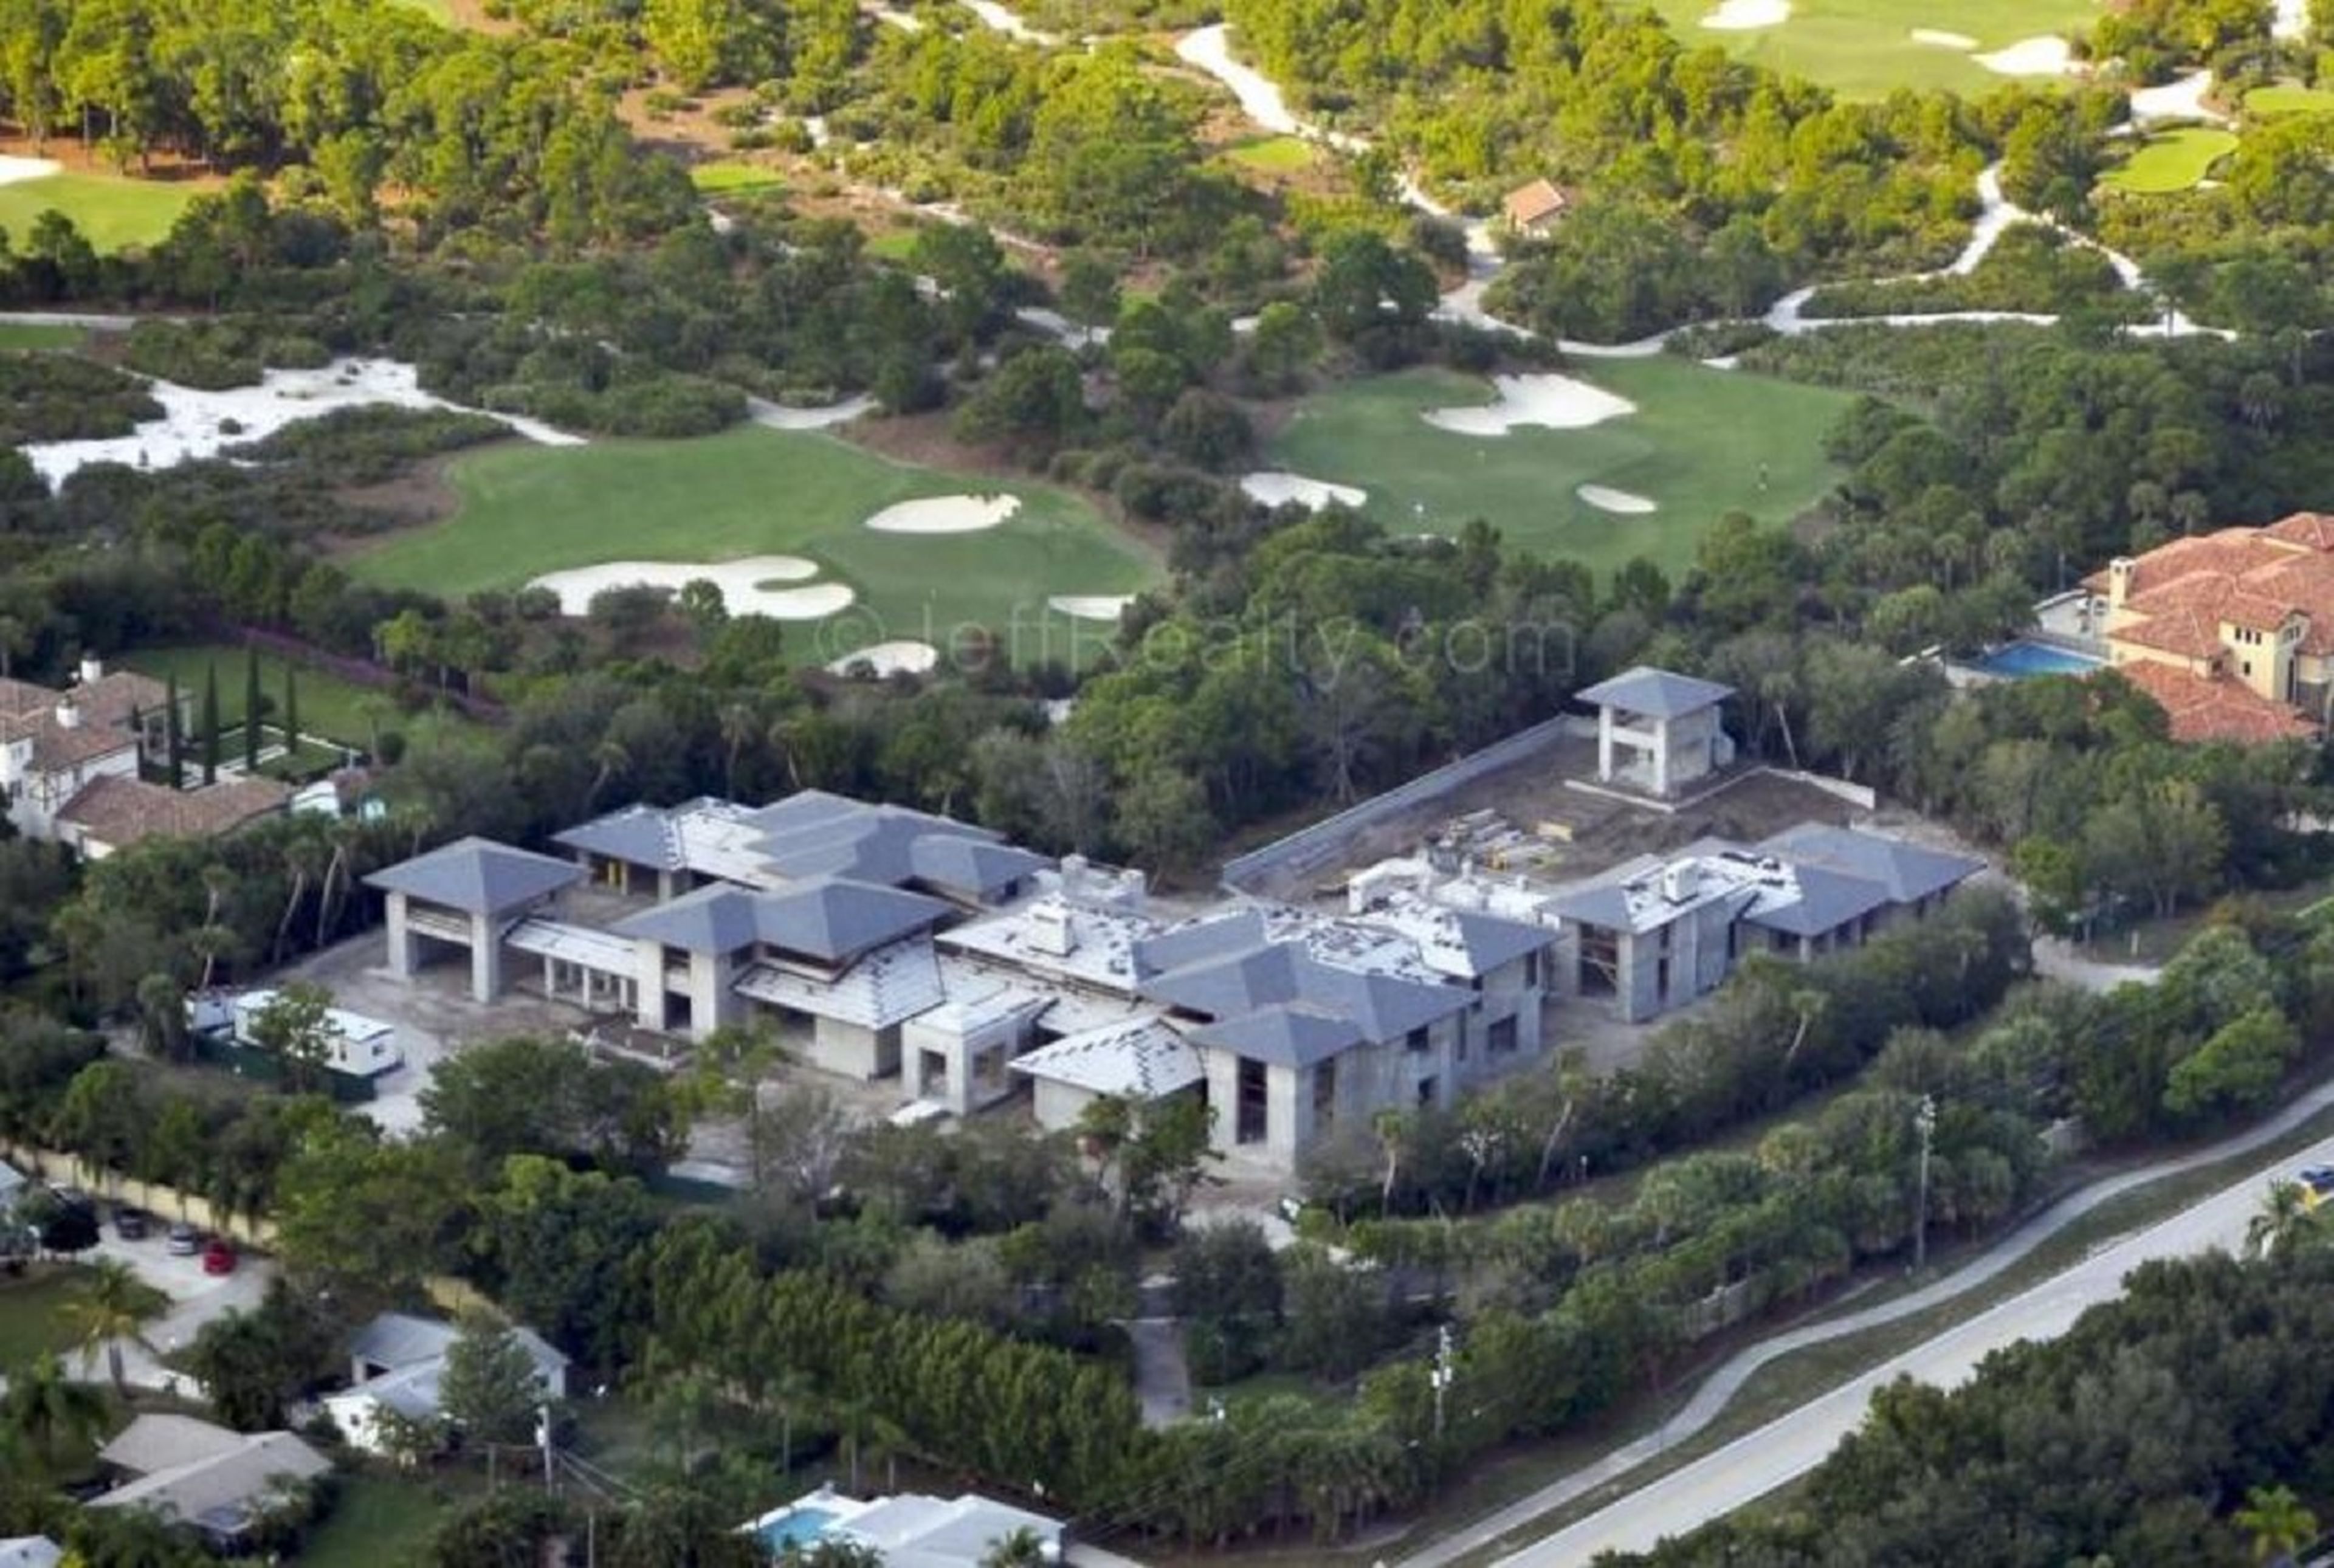 Se gastó 12,8 millones de dólares en construir la casa de sus sueños en Florida